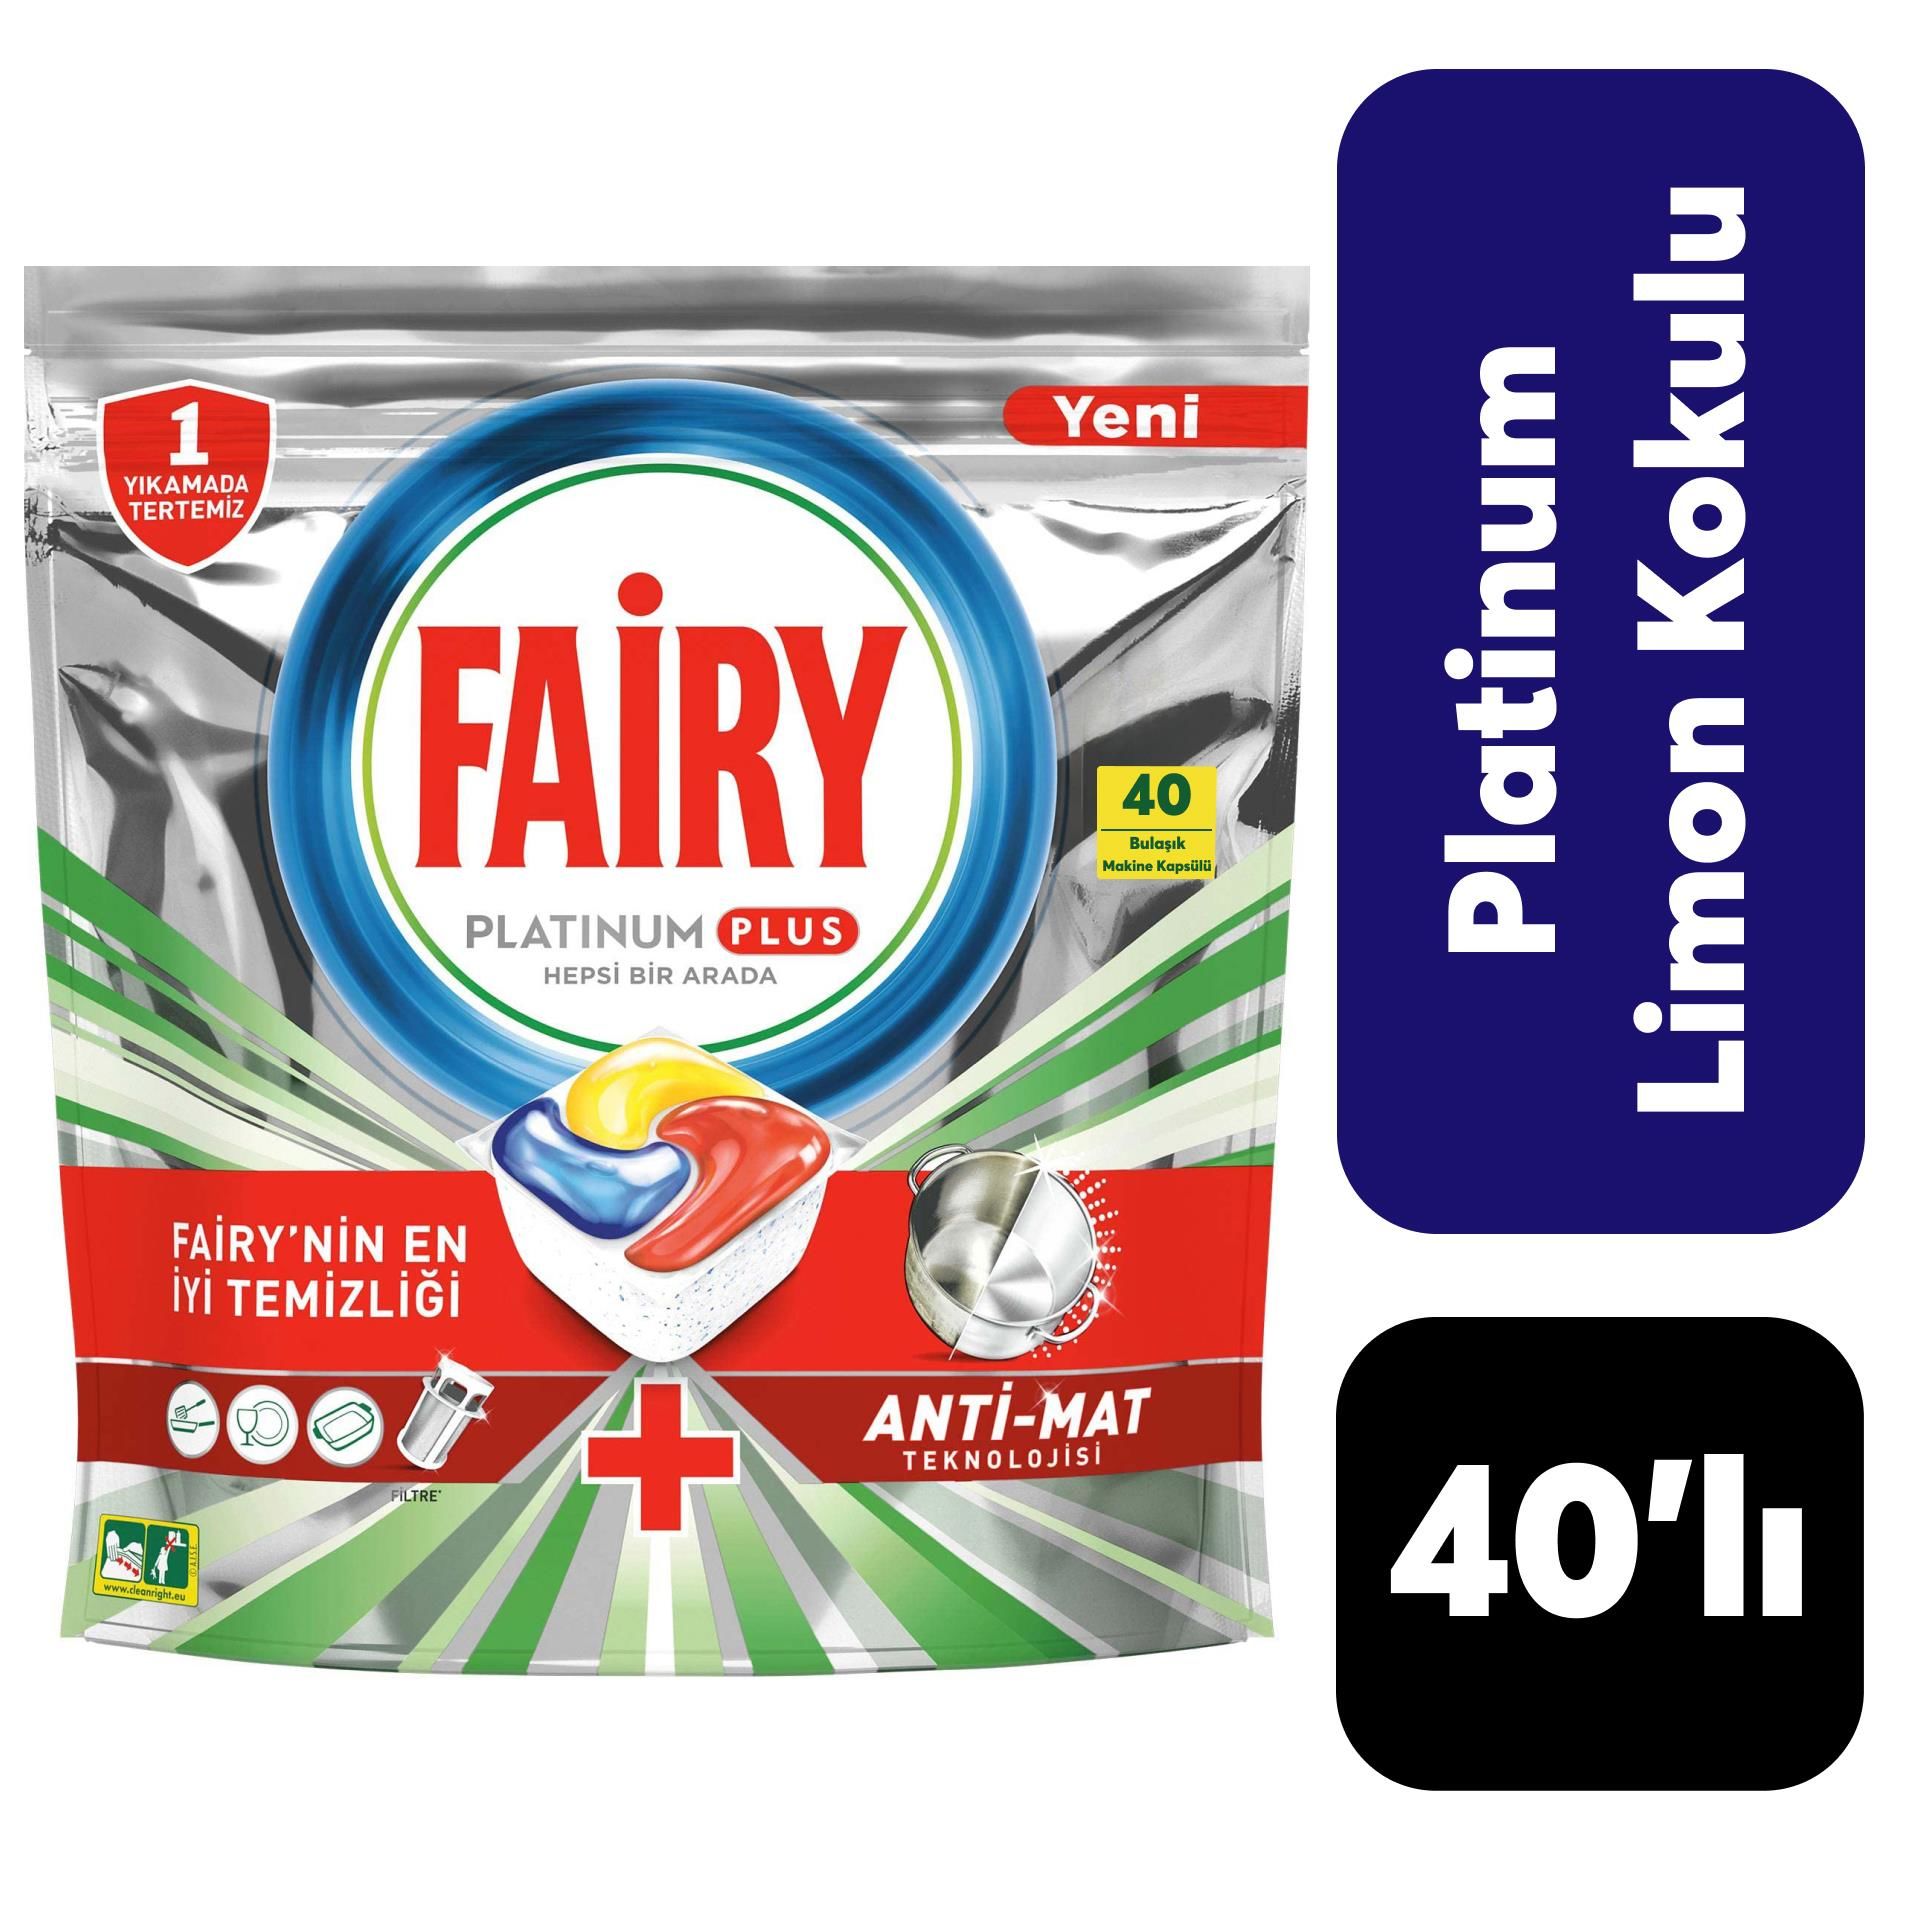 Fairy Platinum Plus 40'lı Limon Kokulu